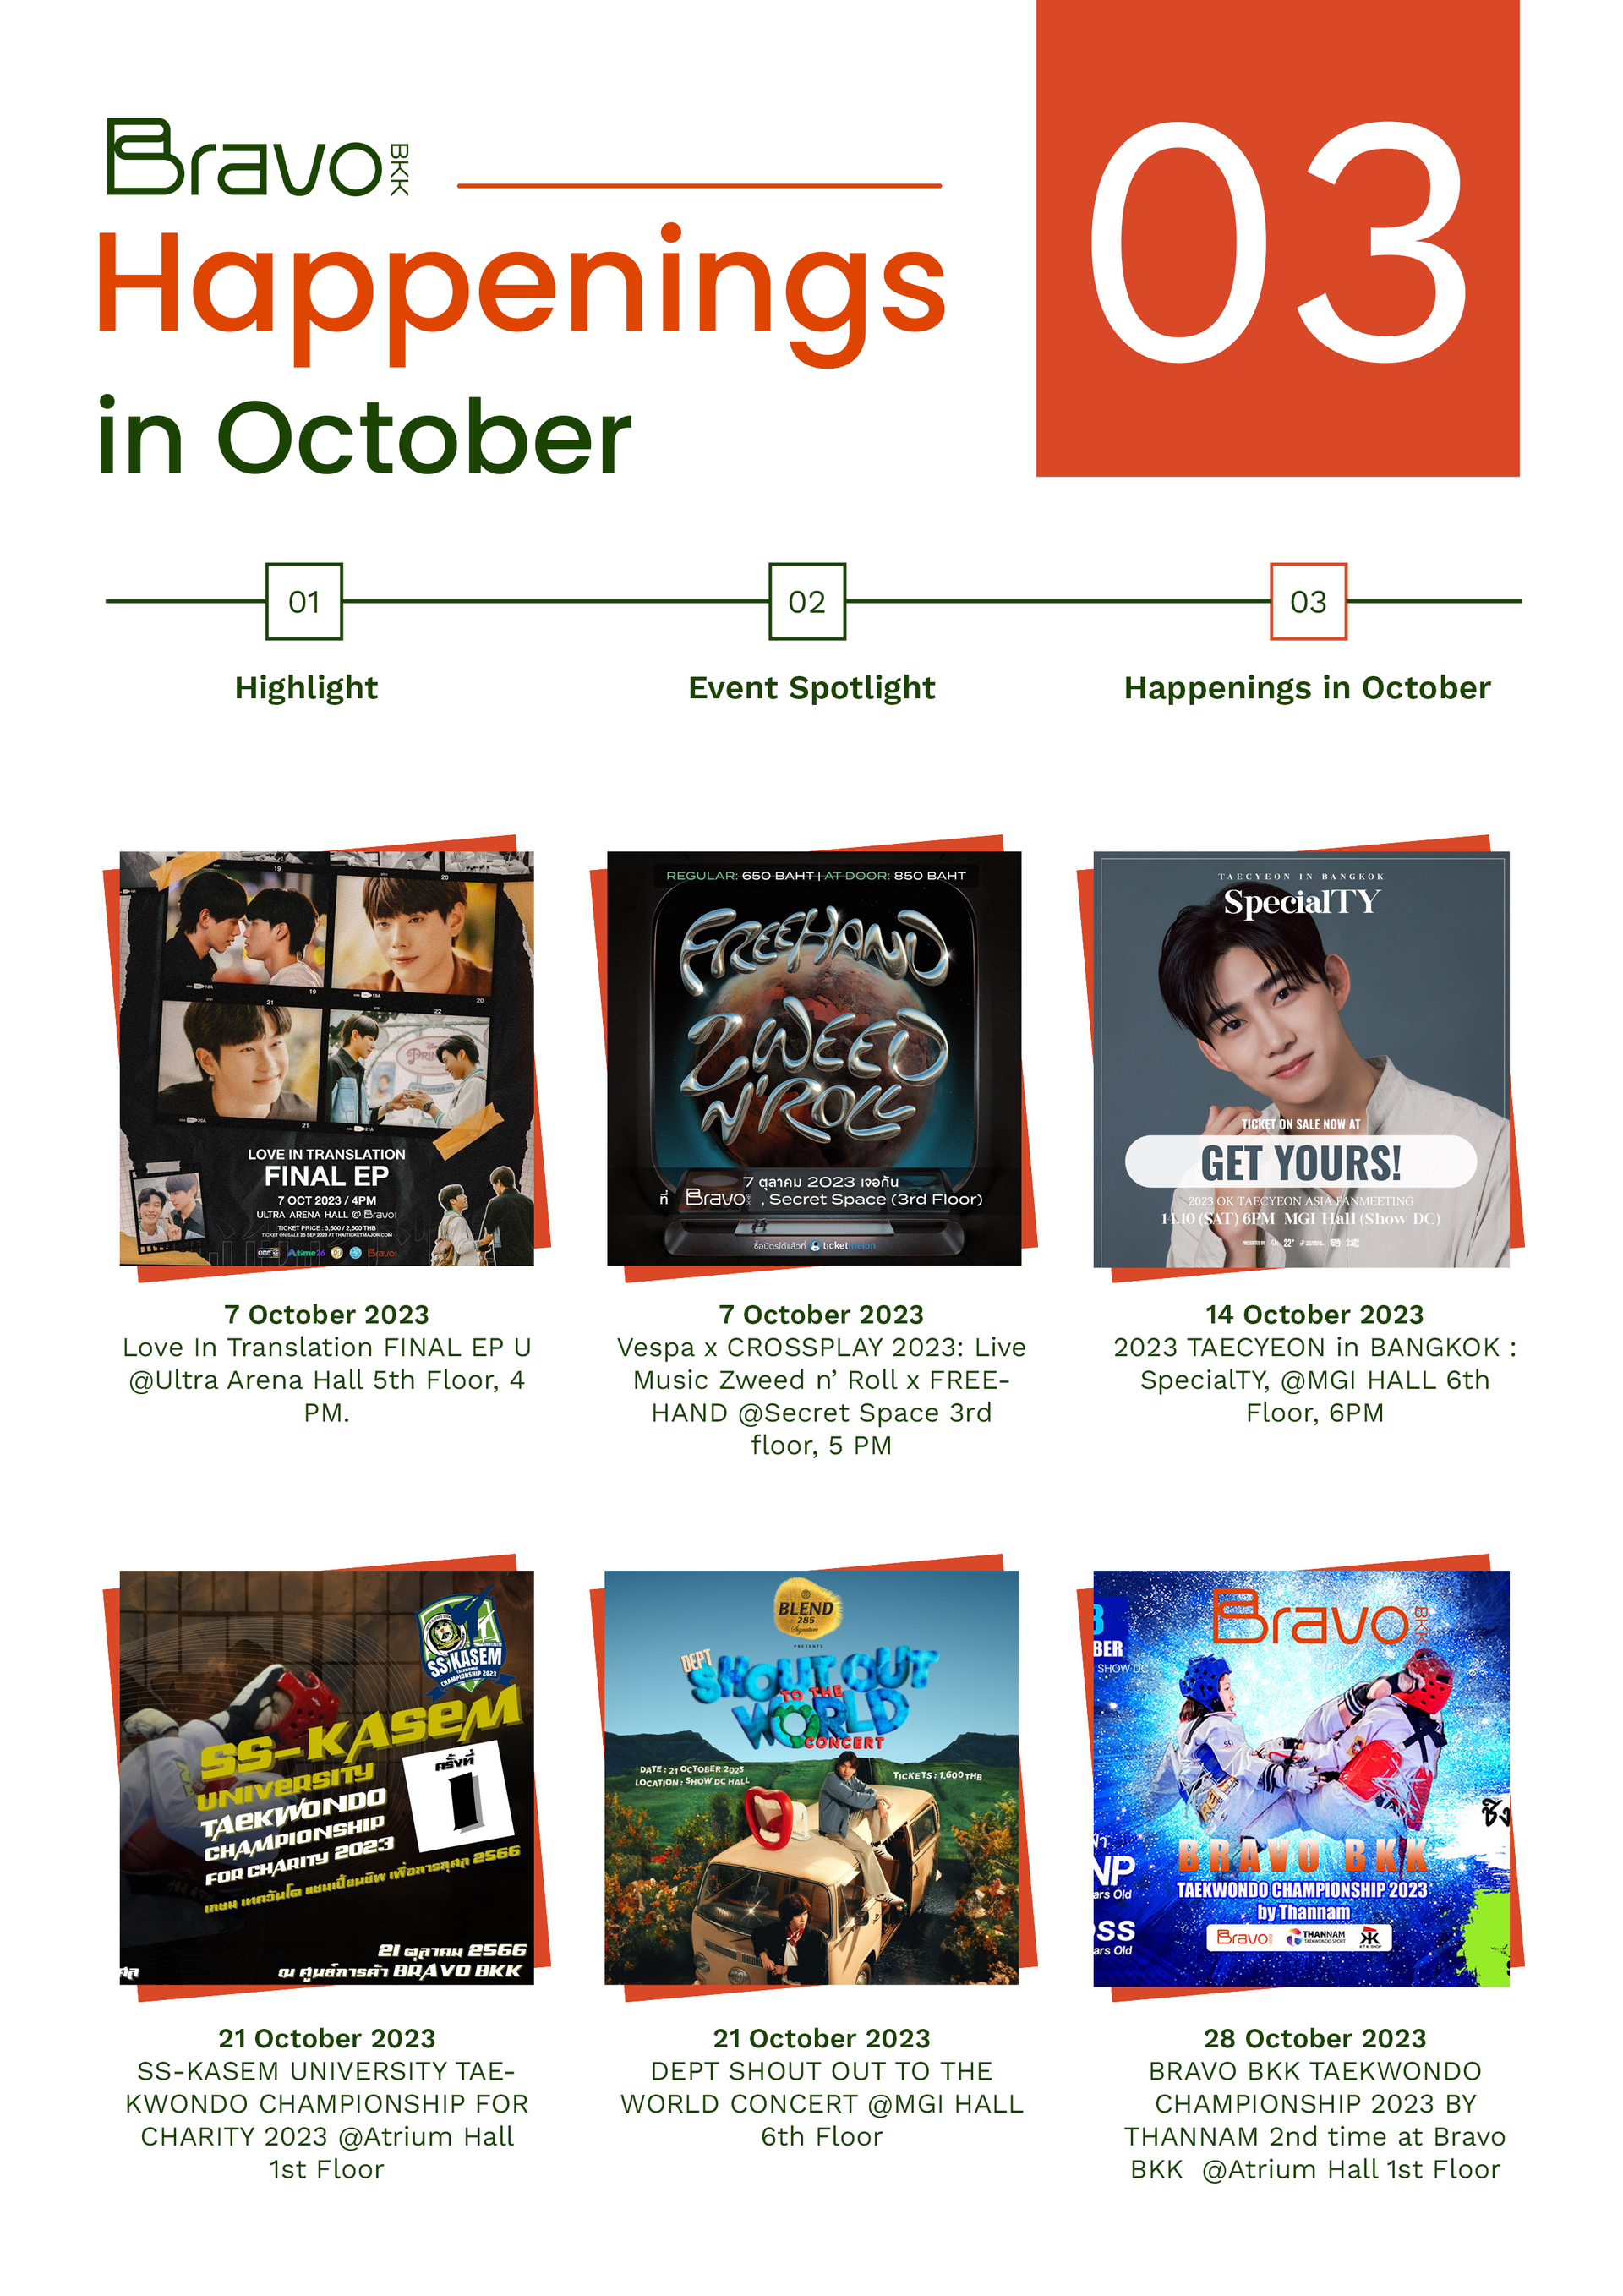 Bravo BKK Newsletter October 23 Issue 1 Happenings in October